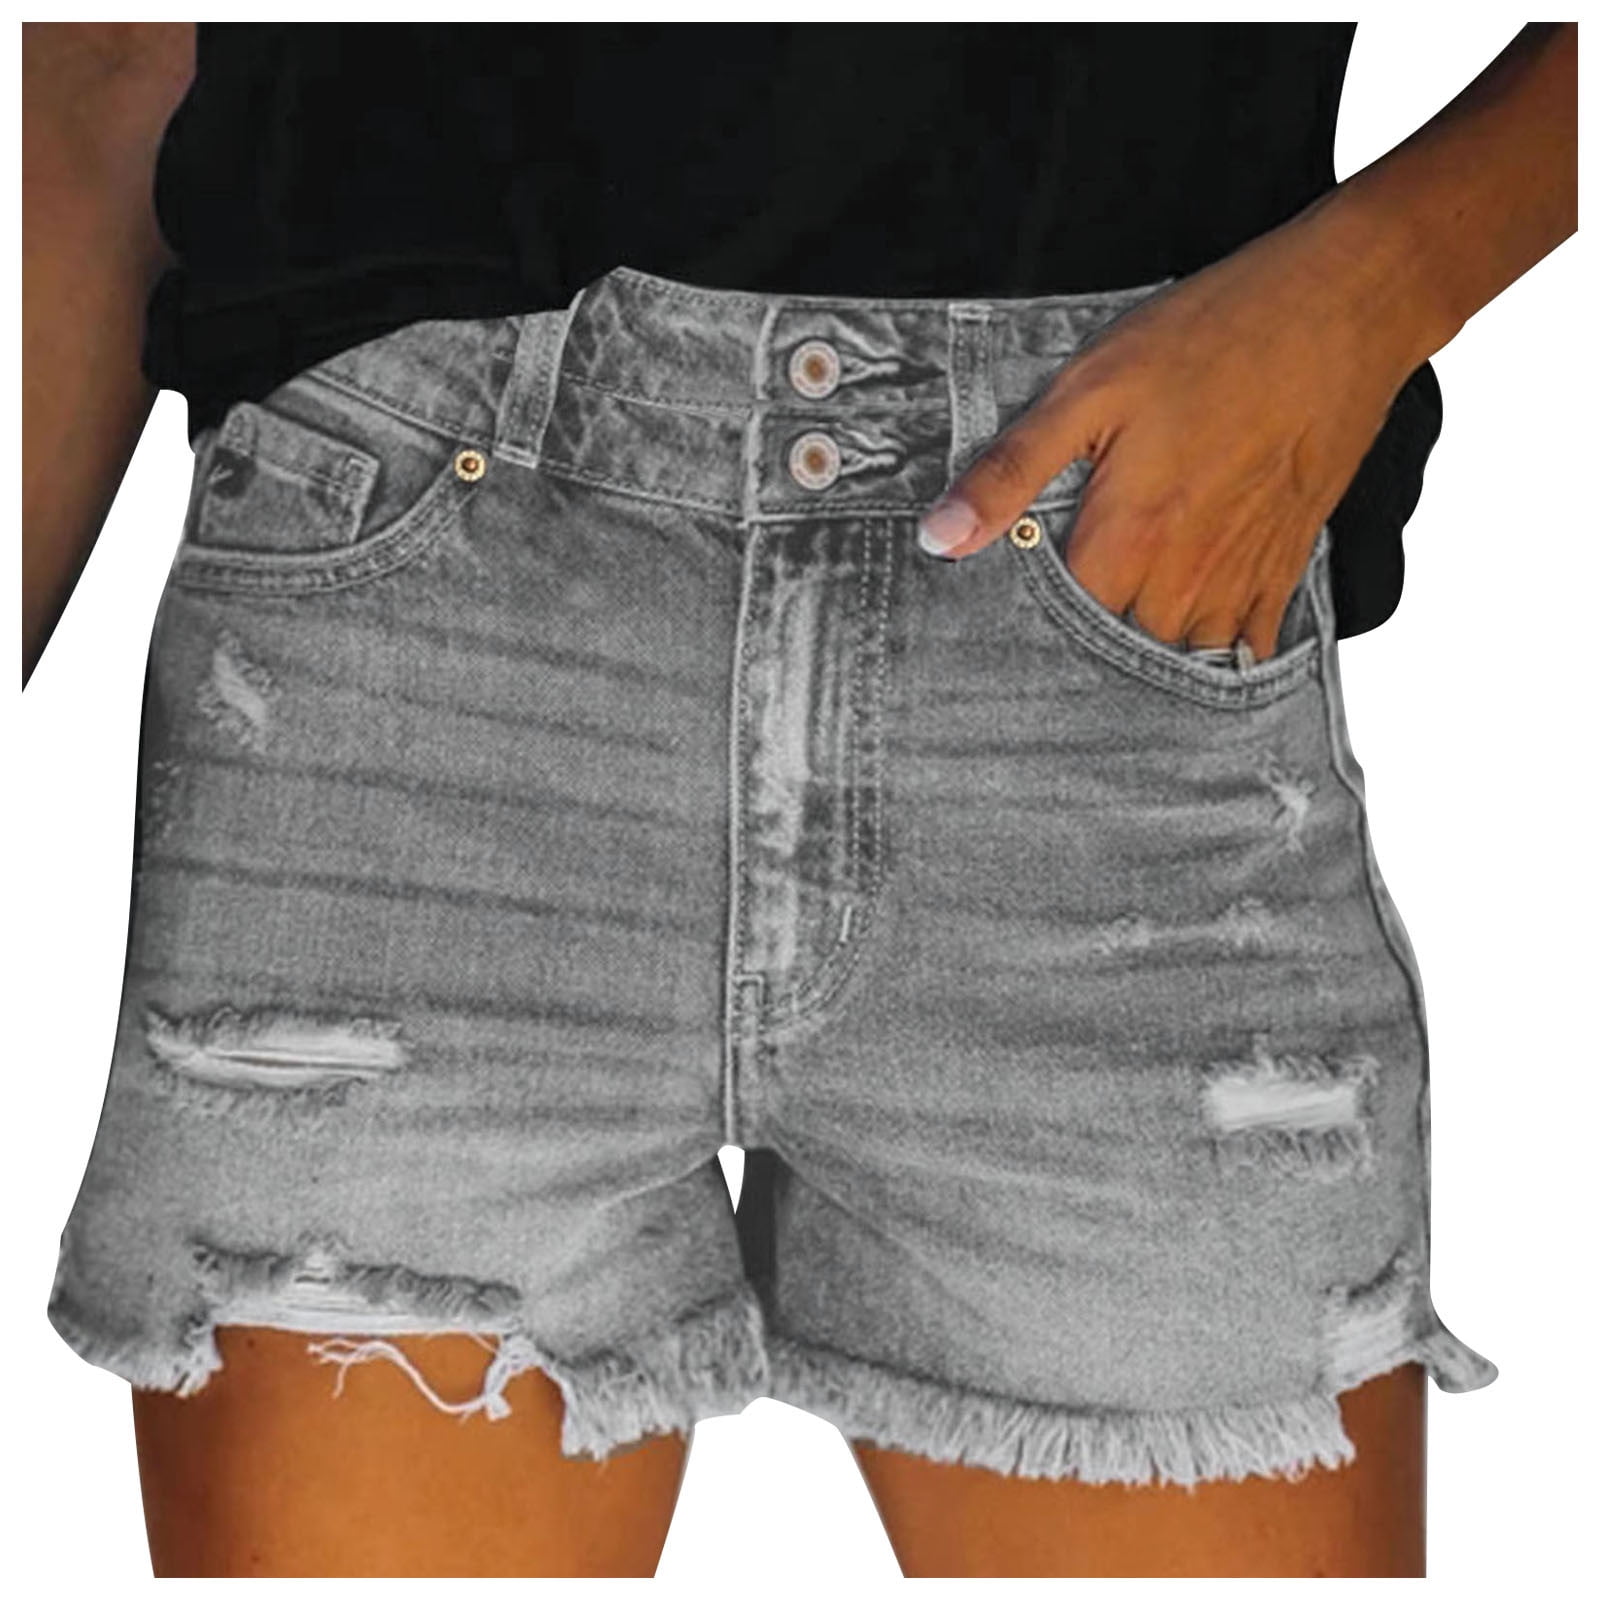 Maurices Ellie Destruction Jean Shorts | Jean shorts, Clothes design,  Outfit inspo